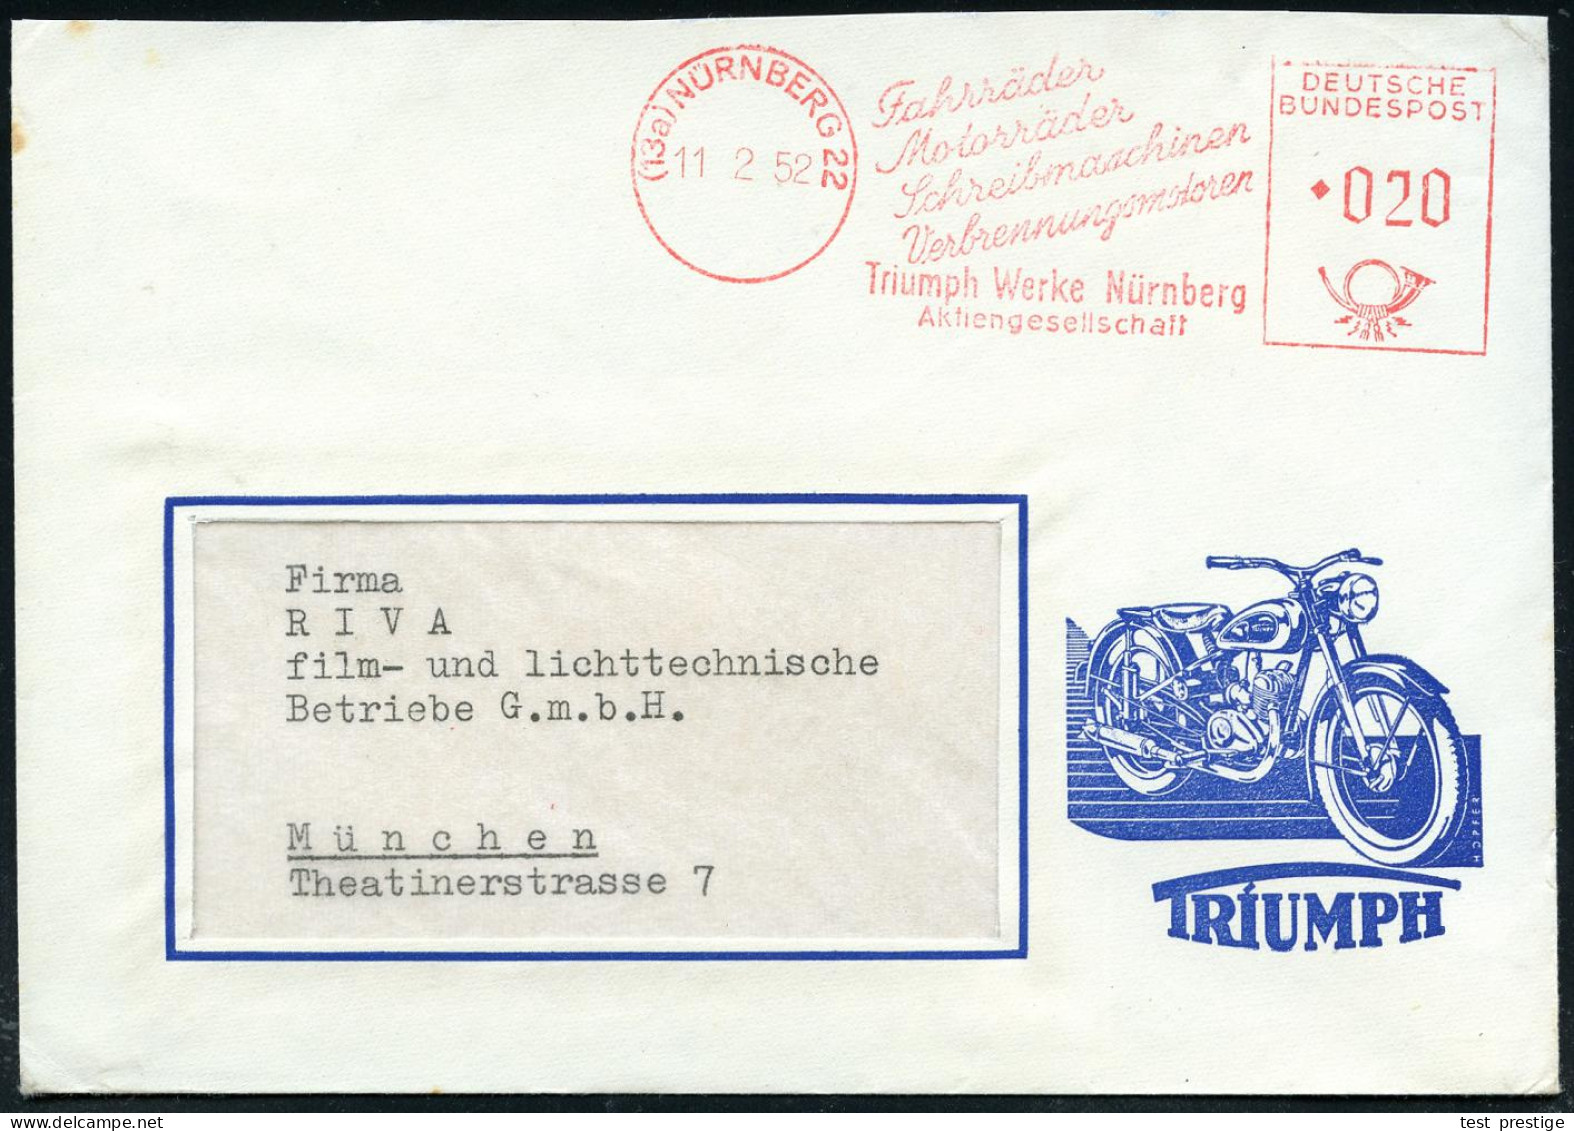 (13a) NÜRNBERG 22/ Fahrräder/ Motrräder/ Schreibmaschinen../ Triumph-Werke.. 1952 (11.2.) AFS Auf Reklame-Bf.: Mit TRIUM - Motorräder